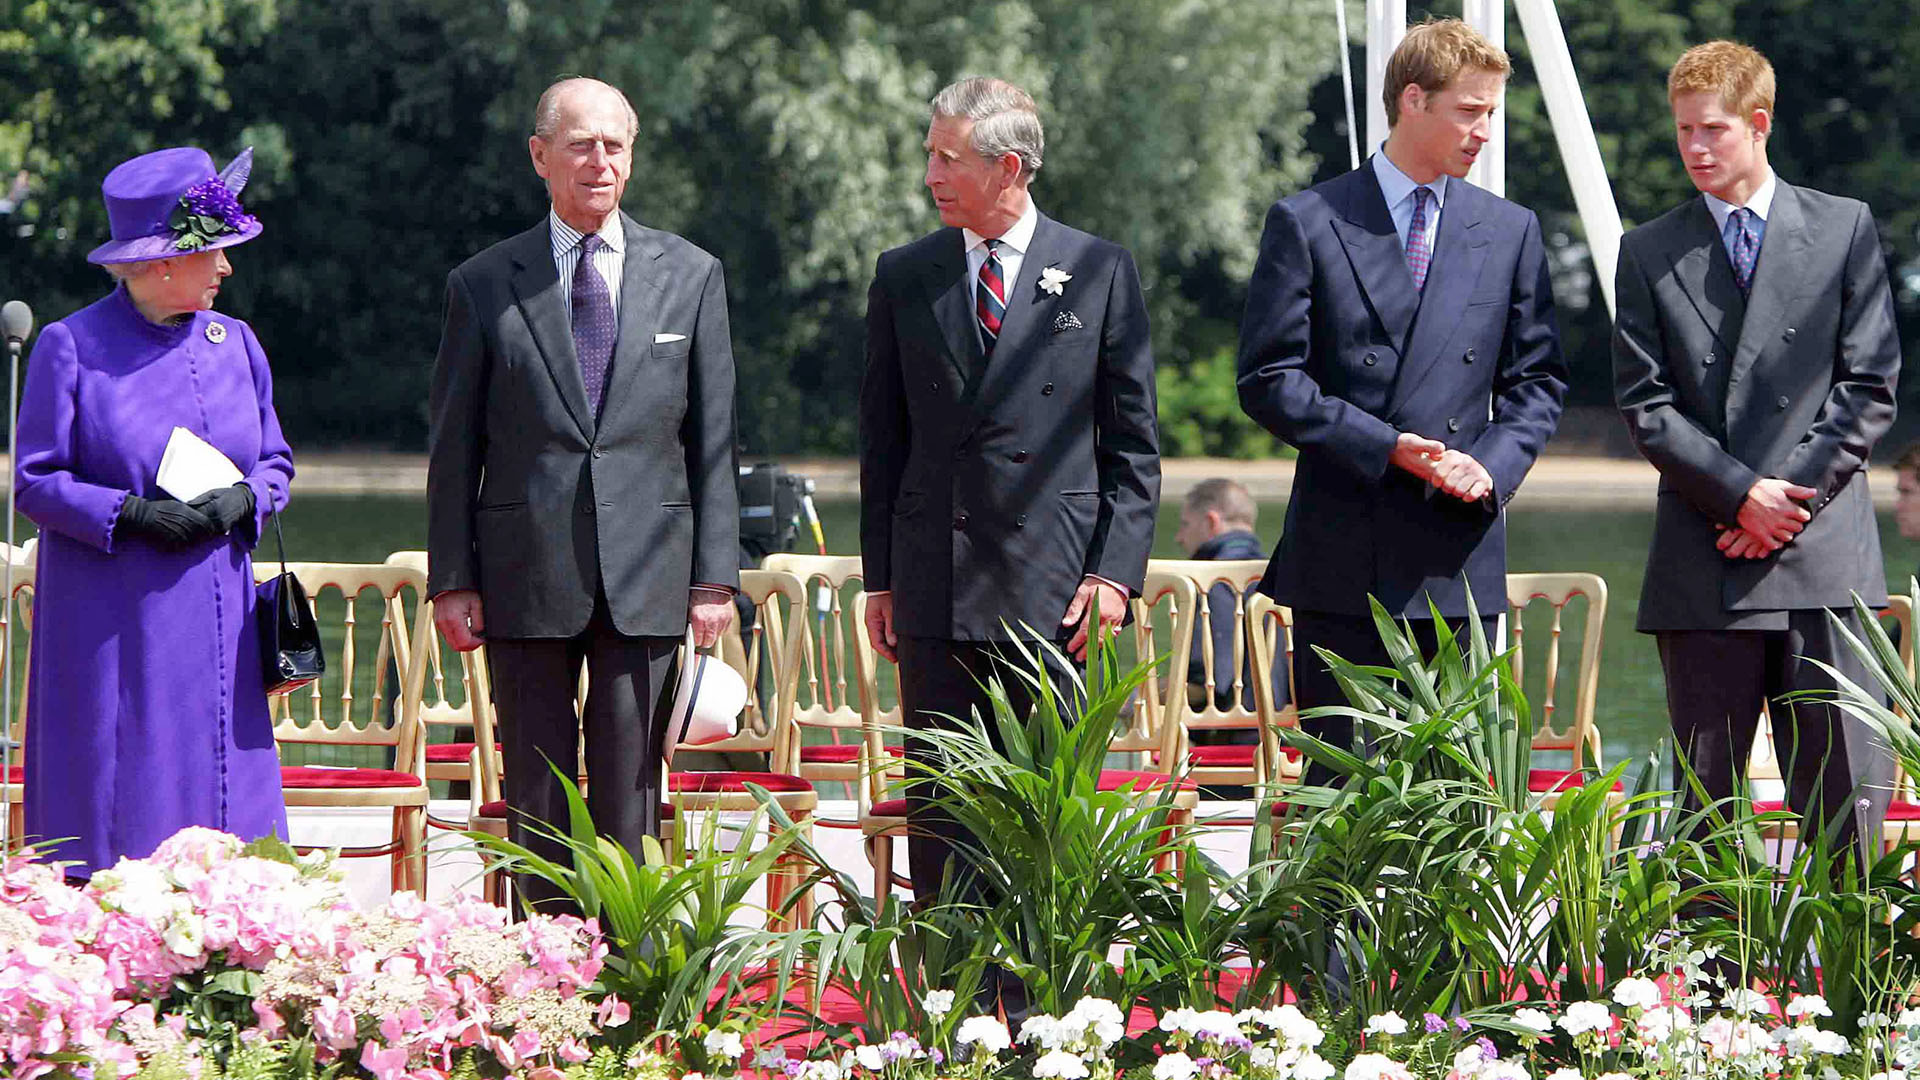 6 de julio de 2004.  La reina Isabel junto a su esposo, el duque de Edimburgo, su hijo, el príncipe Carlos de Gales y sus nietos, los príncipes William y Harry, durante la inauguración de una fuente construida en memoria de Diana, princesa de Gales, en el Hyde Park de Londres